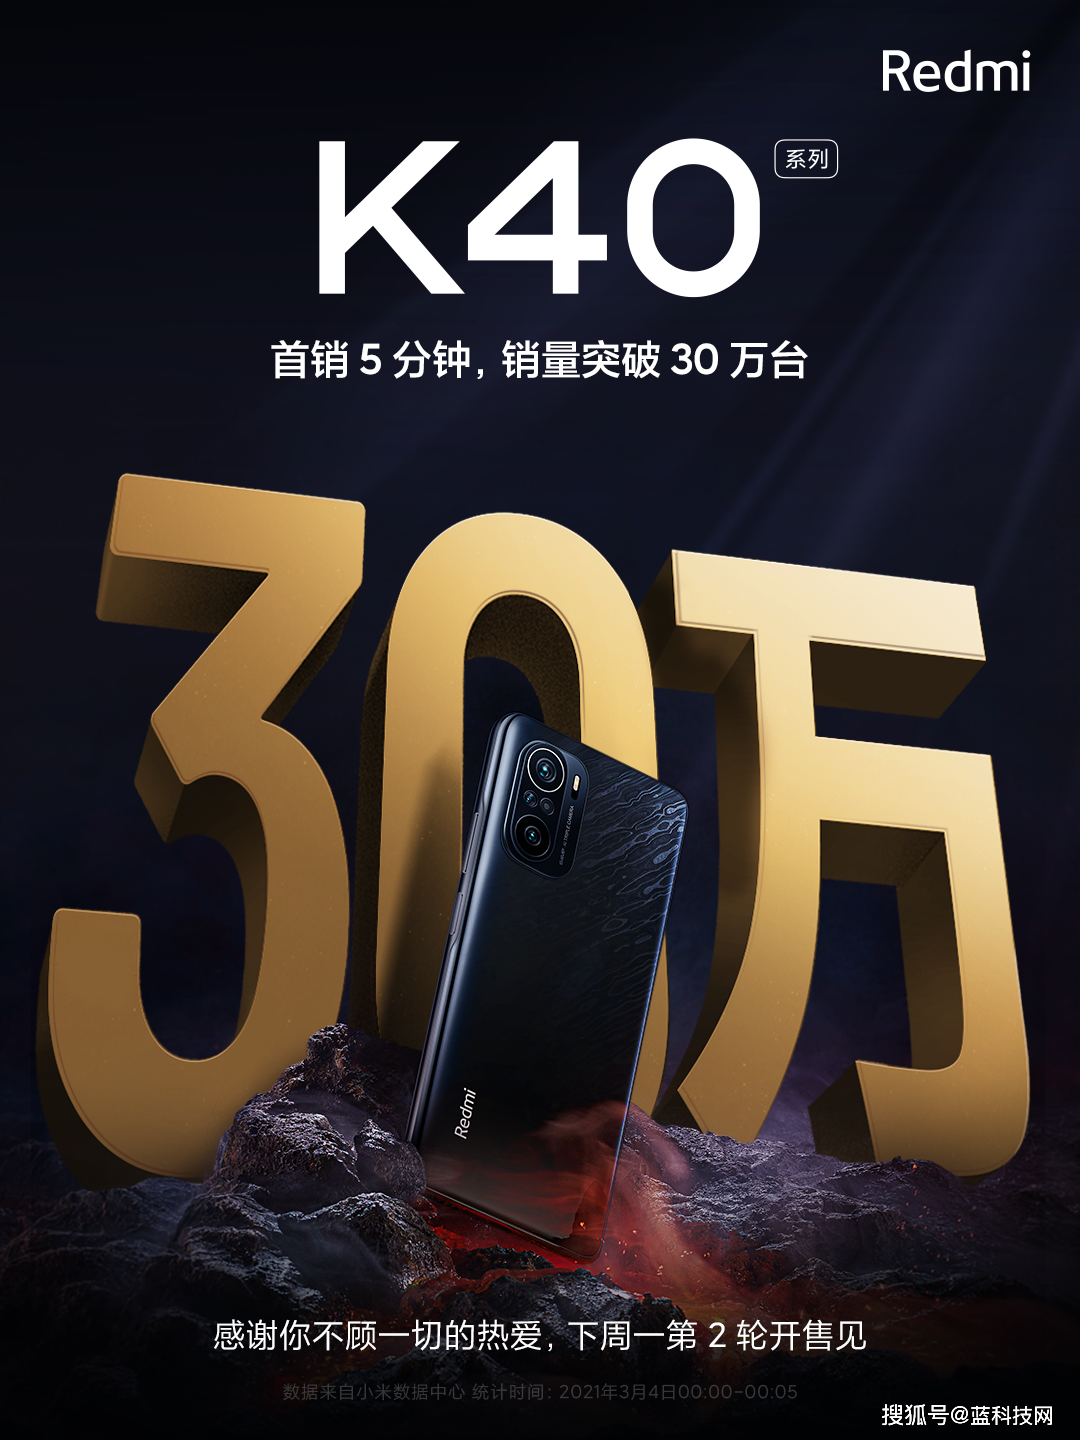 Redmi K40系列首销5分钟破30万台 旗舰焊门员实至名归